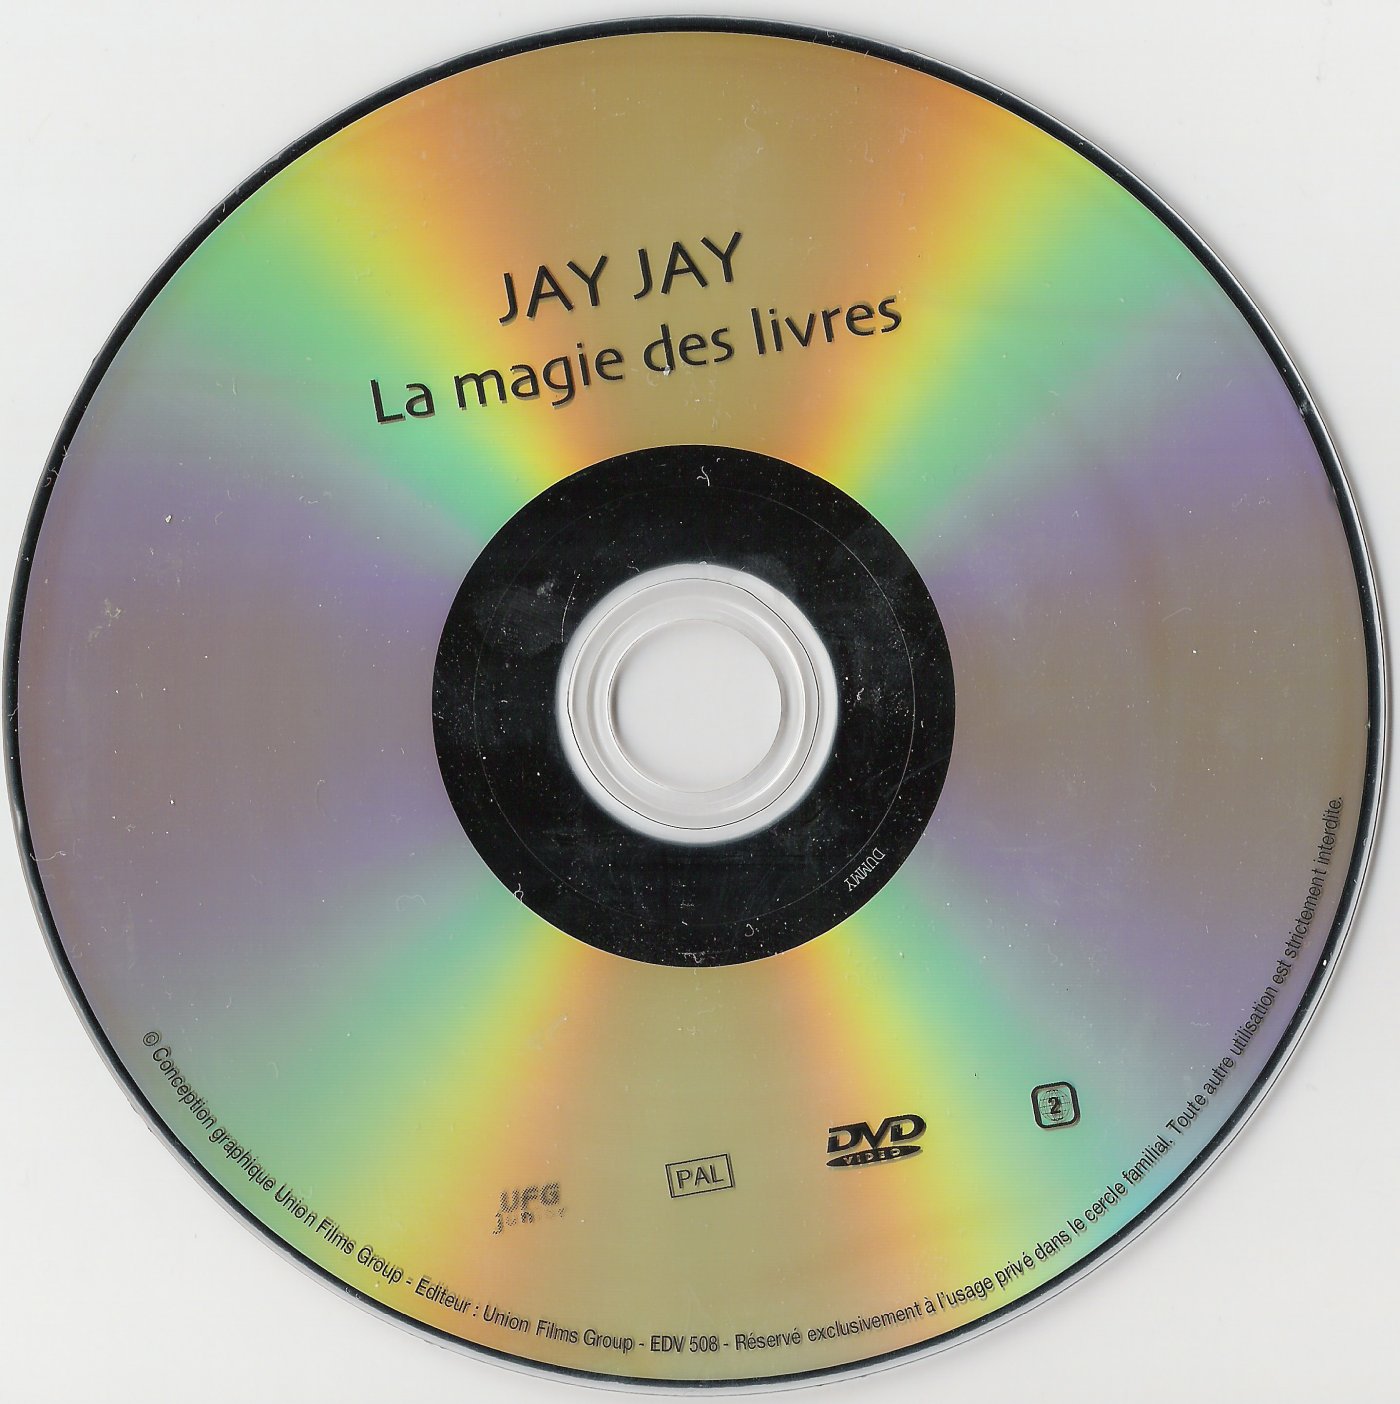 Jay jay le petit avion - La magie des livres